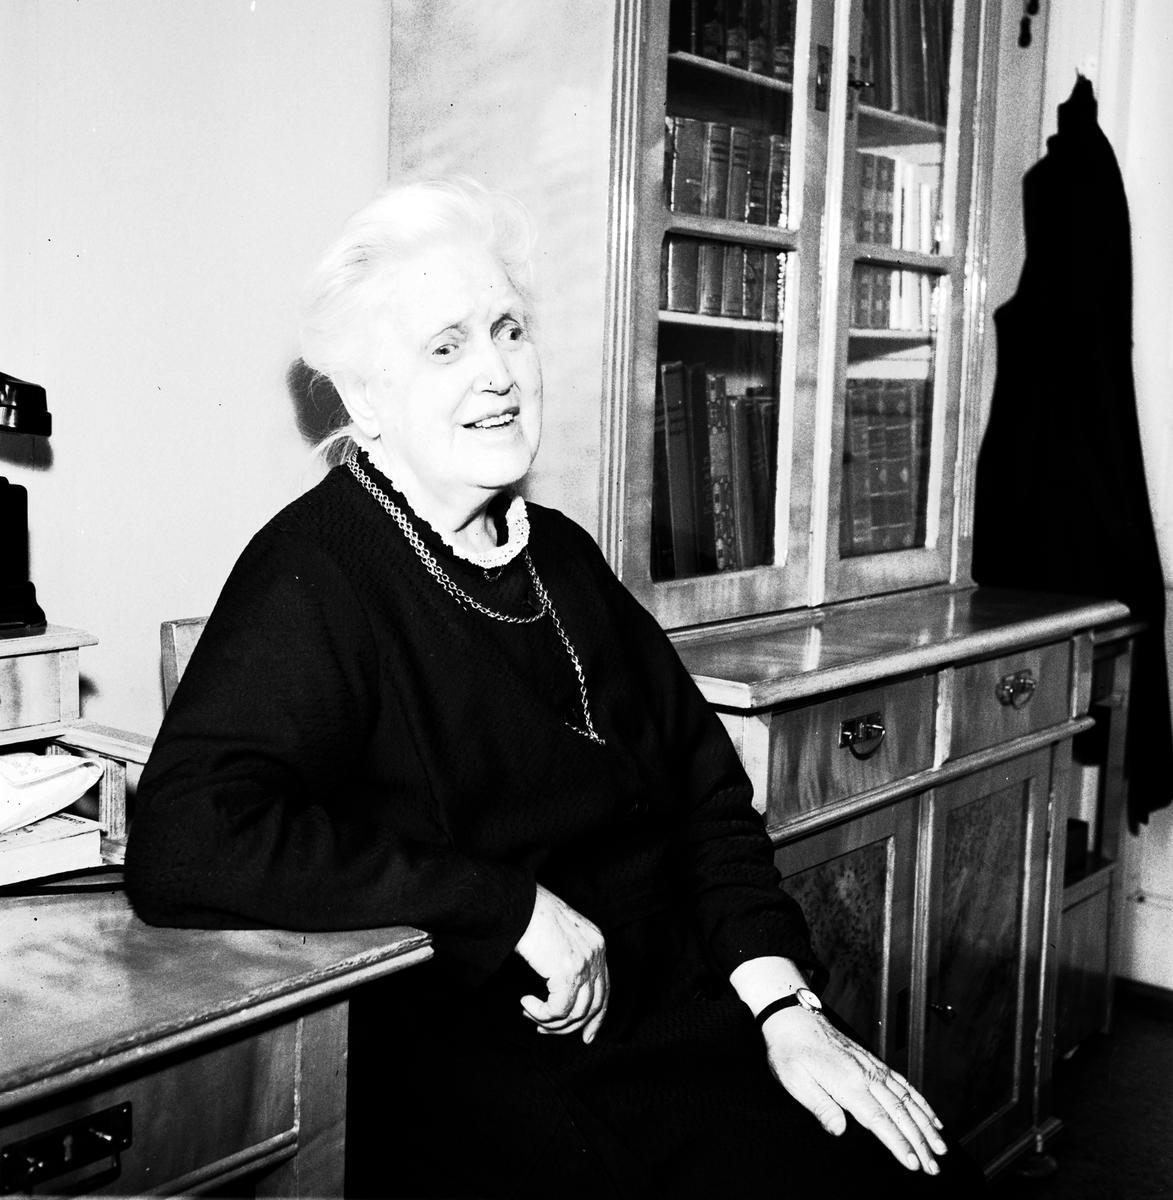 Svartvit porträttbild av en äldre kvinna med vitt hår och mörka kläder. Hon sitter avslappnat vid ett skrivbord, med en bokhylla i bakgrunden fylld med böcker. Kvinnan ler vänligt och bär ett halsband samt en klocka på vänster handled.